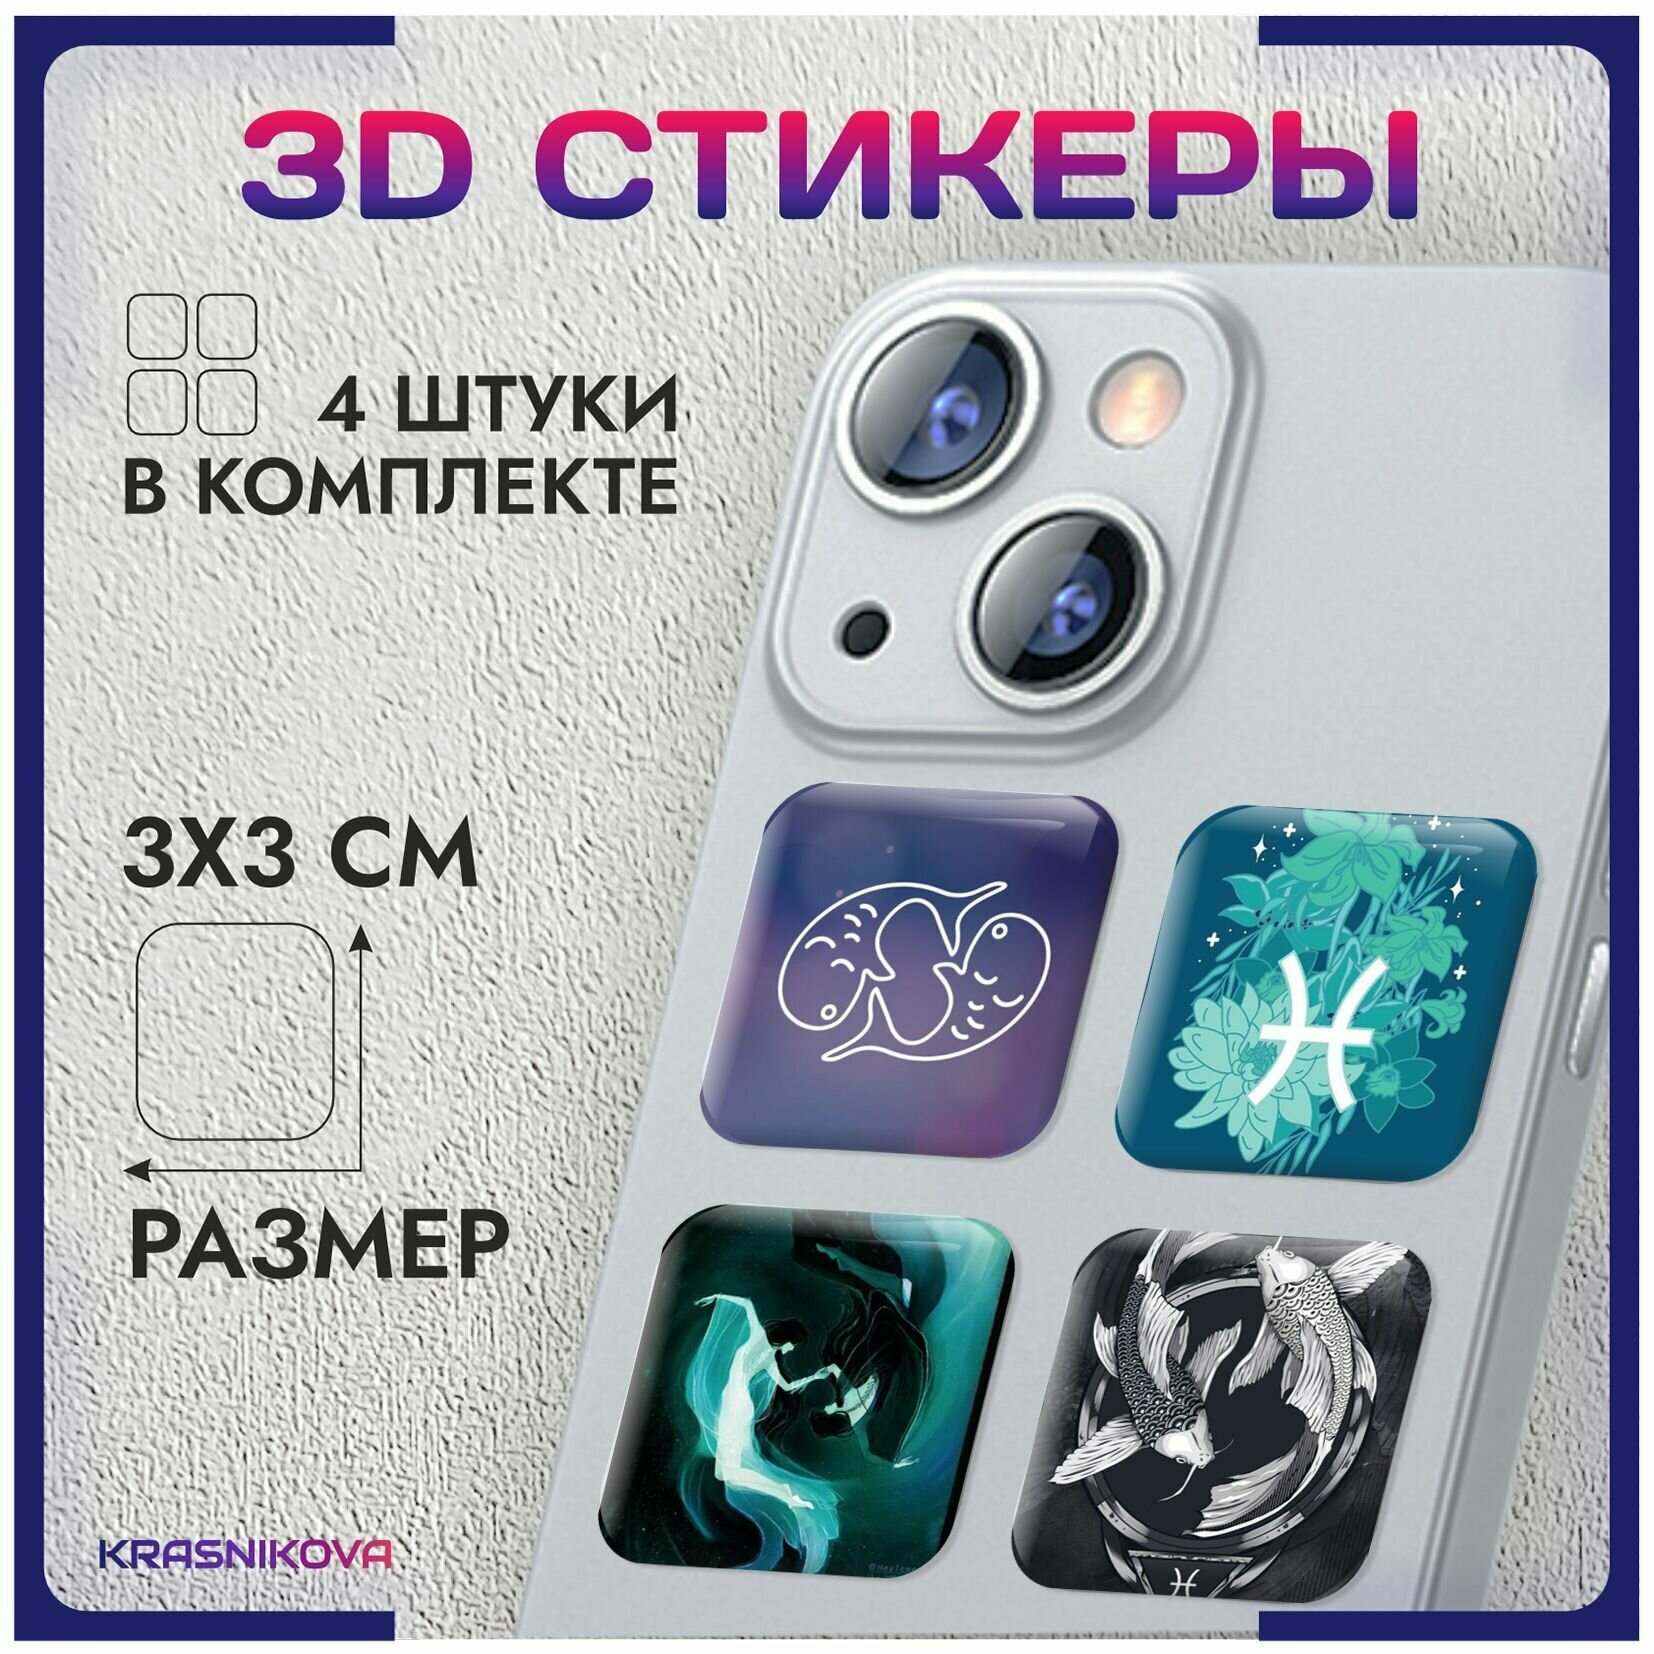 3D стикеры на телефон объемные наклейки знак зодиака рыбы